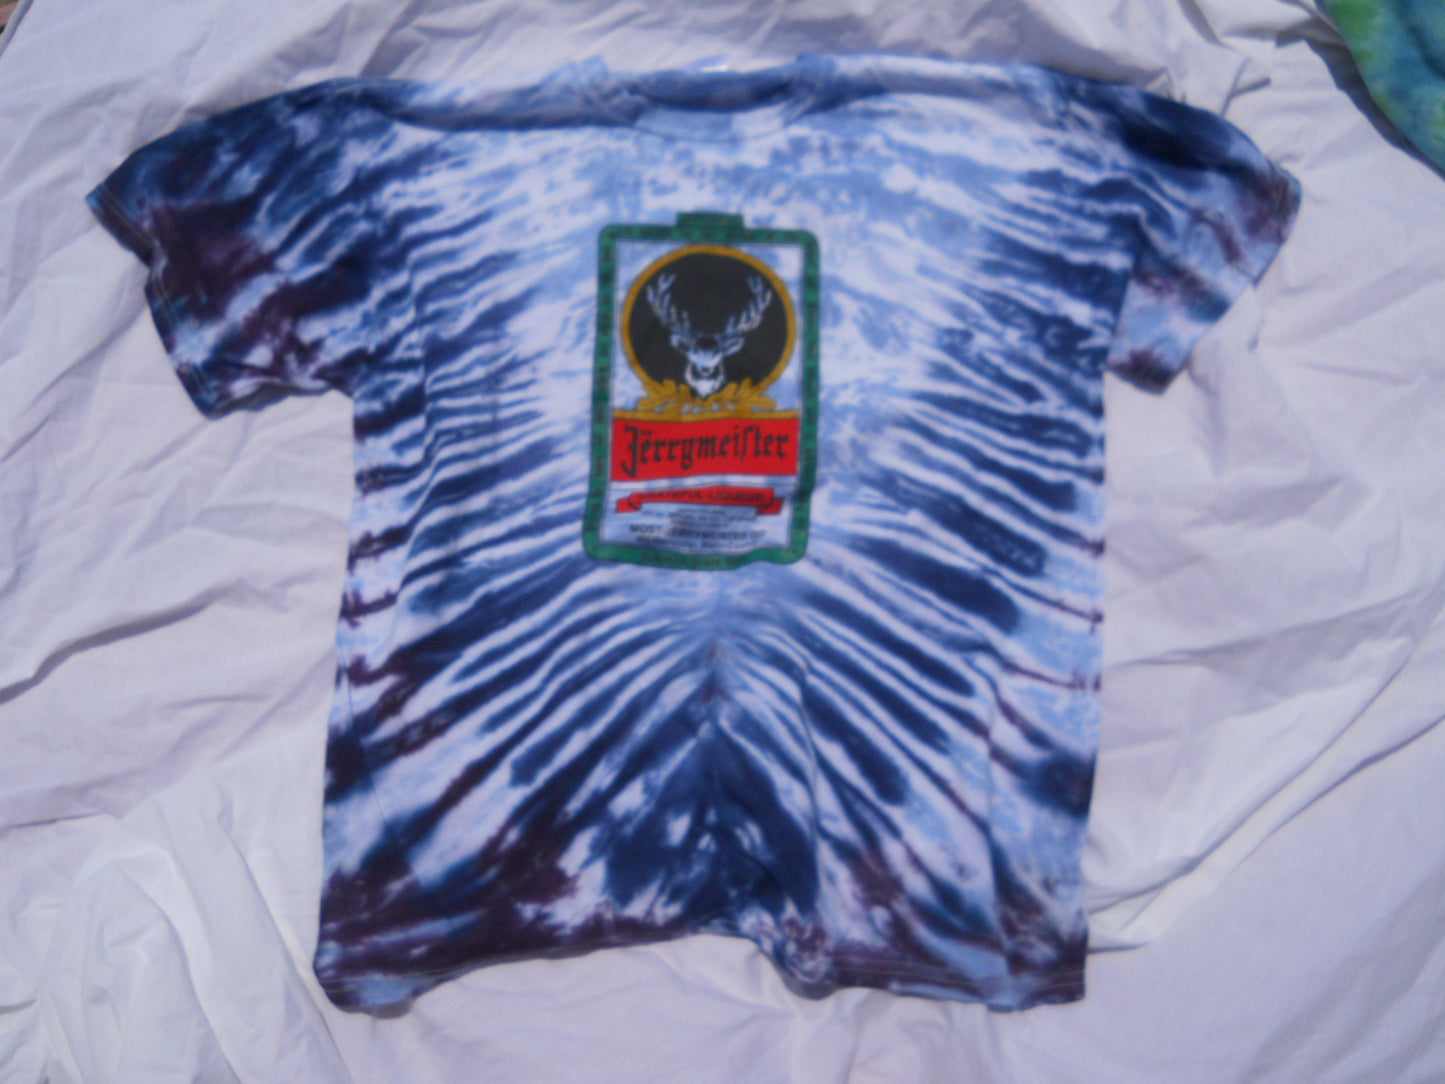 Grateful Dead Jerrymeister Tie Dye T-Shirt - HalfMoonMusic